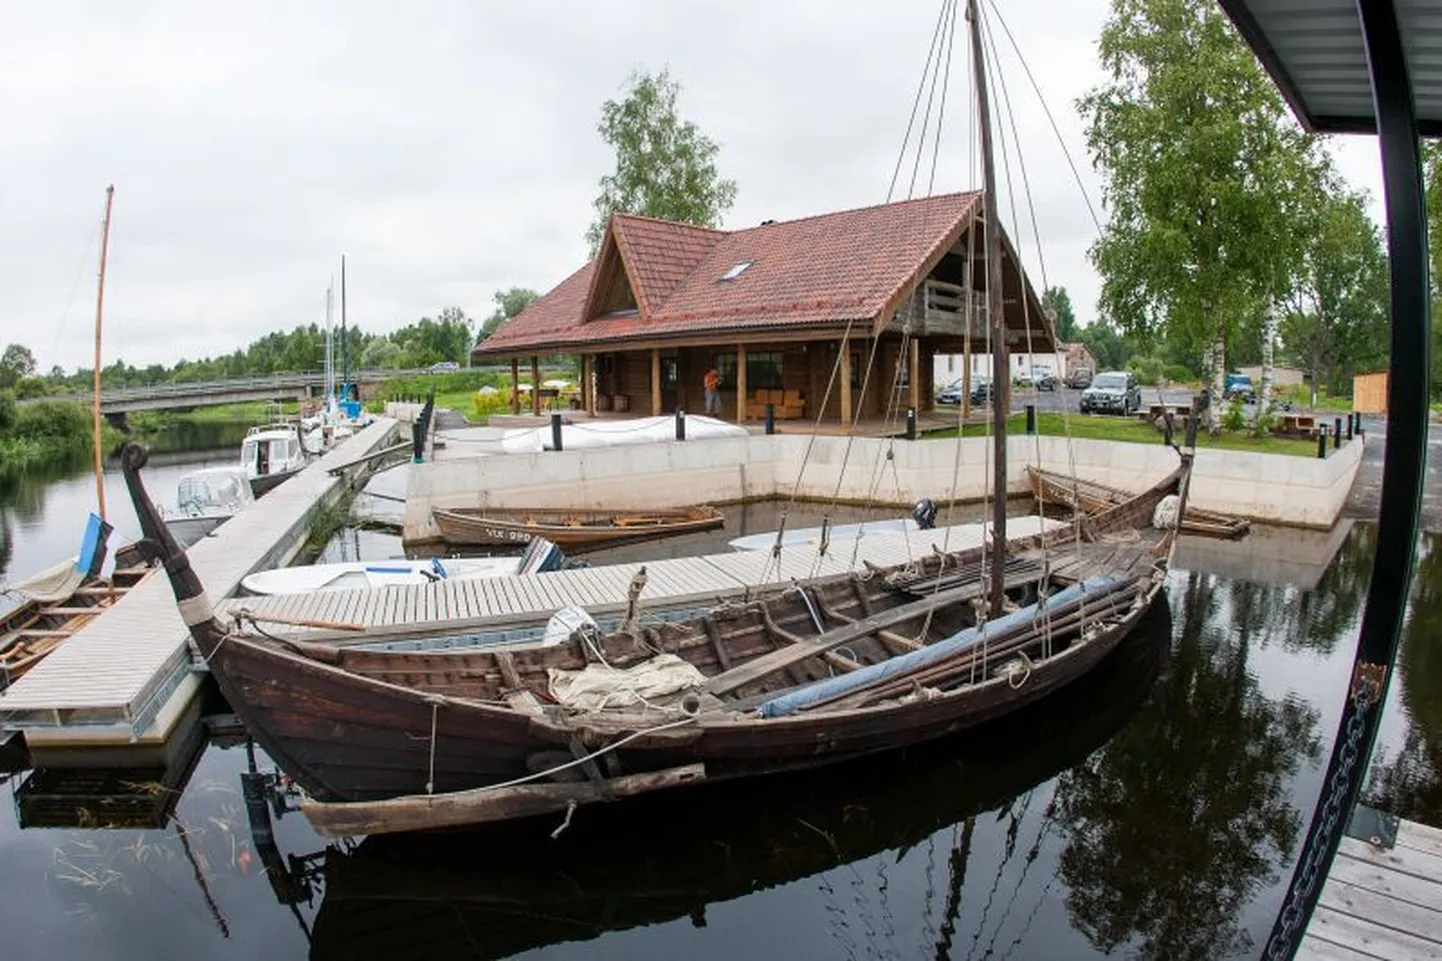 Purjefestivali üheks tõmbenumbriks on viikingilaev Turm, mis jäi 24. juulil „Sakala“ fotograafi objektiivi ette Oiul, kus see ootas transportimist Viljandi järvele.